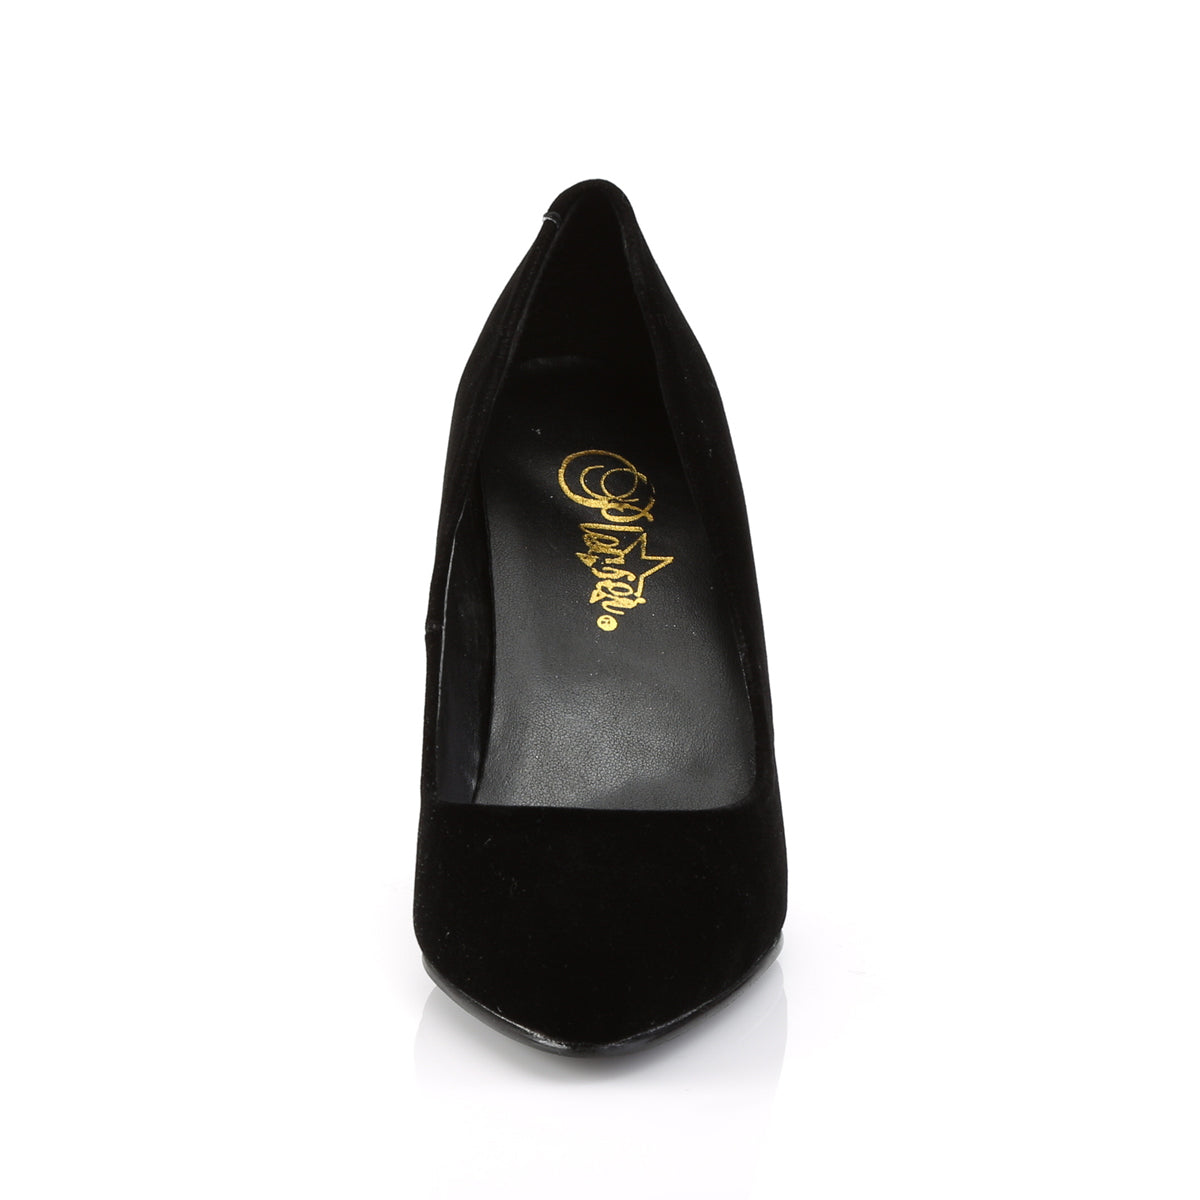 VANITY-420 Pleaser Shoe 4" Heel Black Velvet Fetish Footwear-Pleaser- Sexy Shoes Alternative Footwear